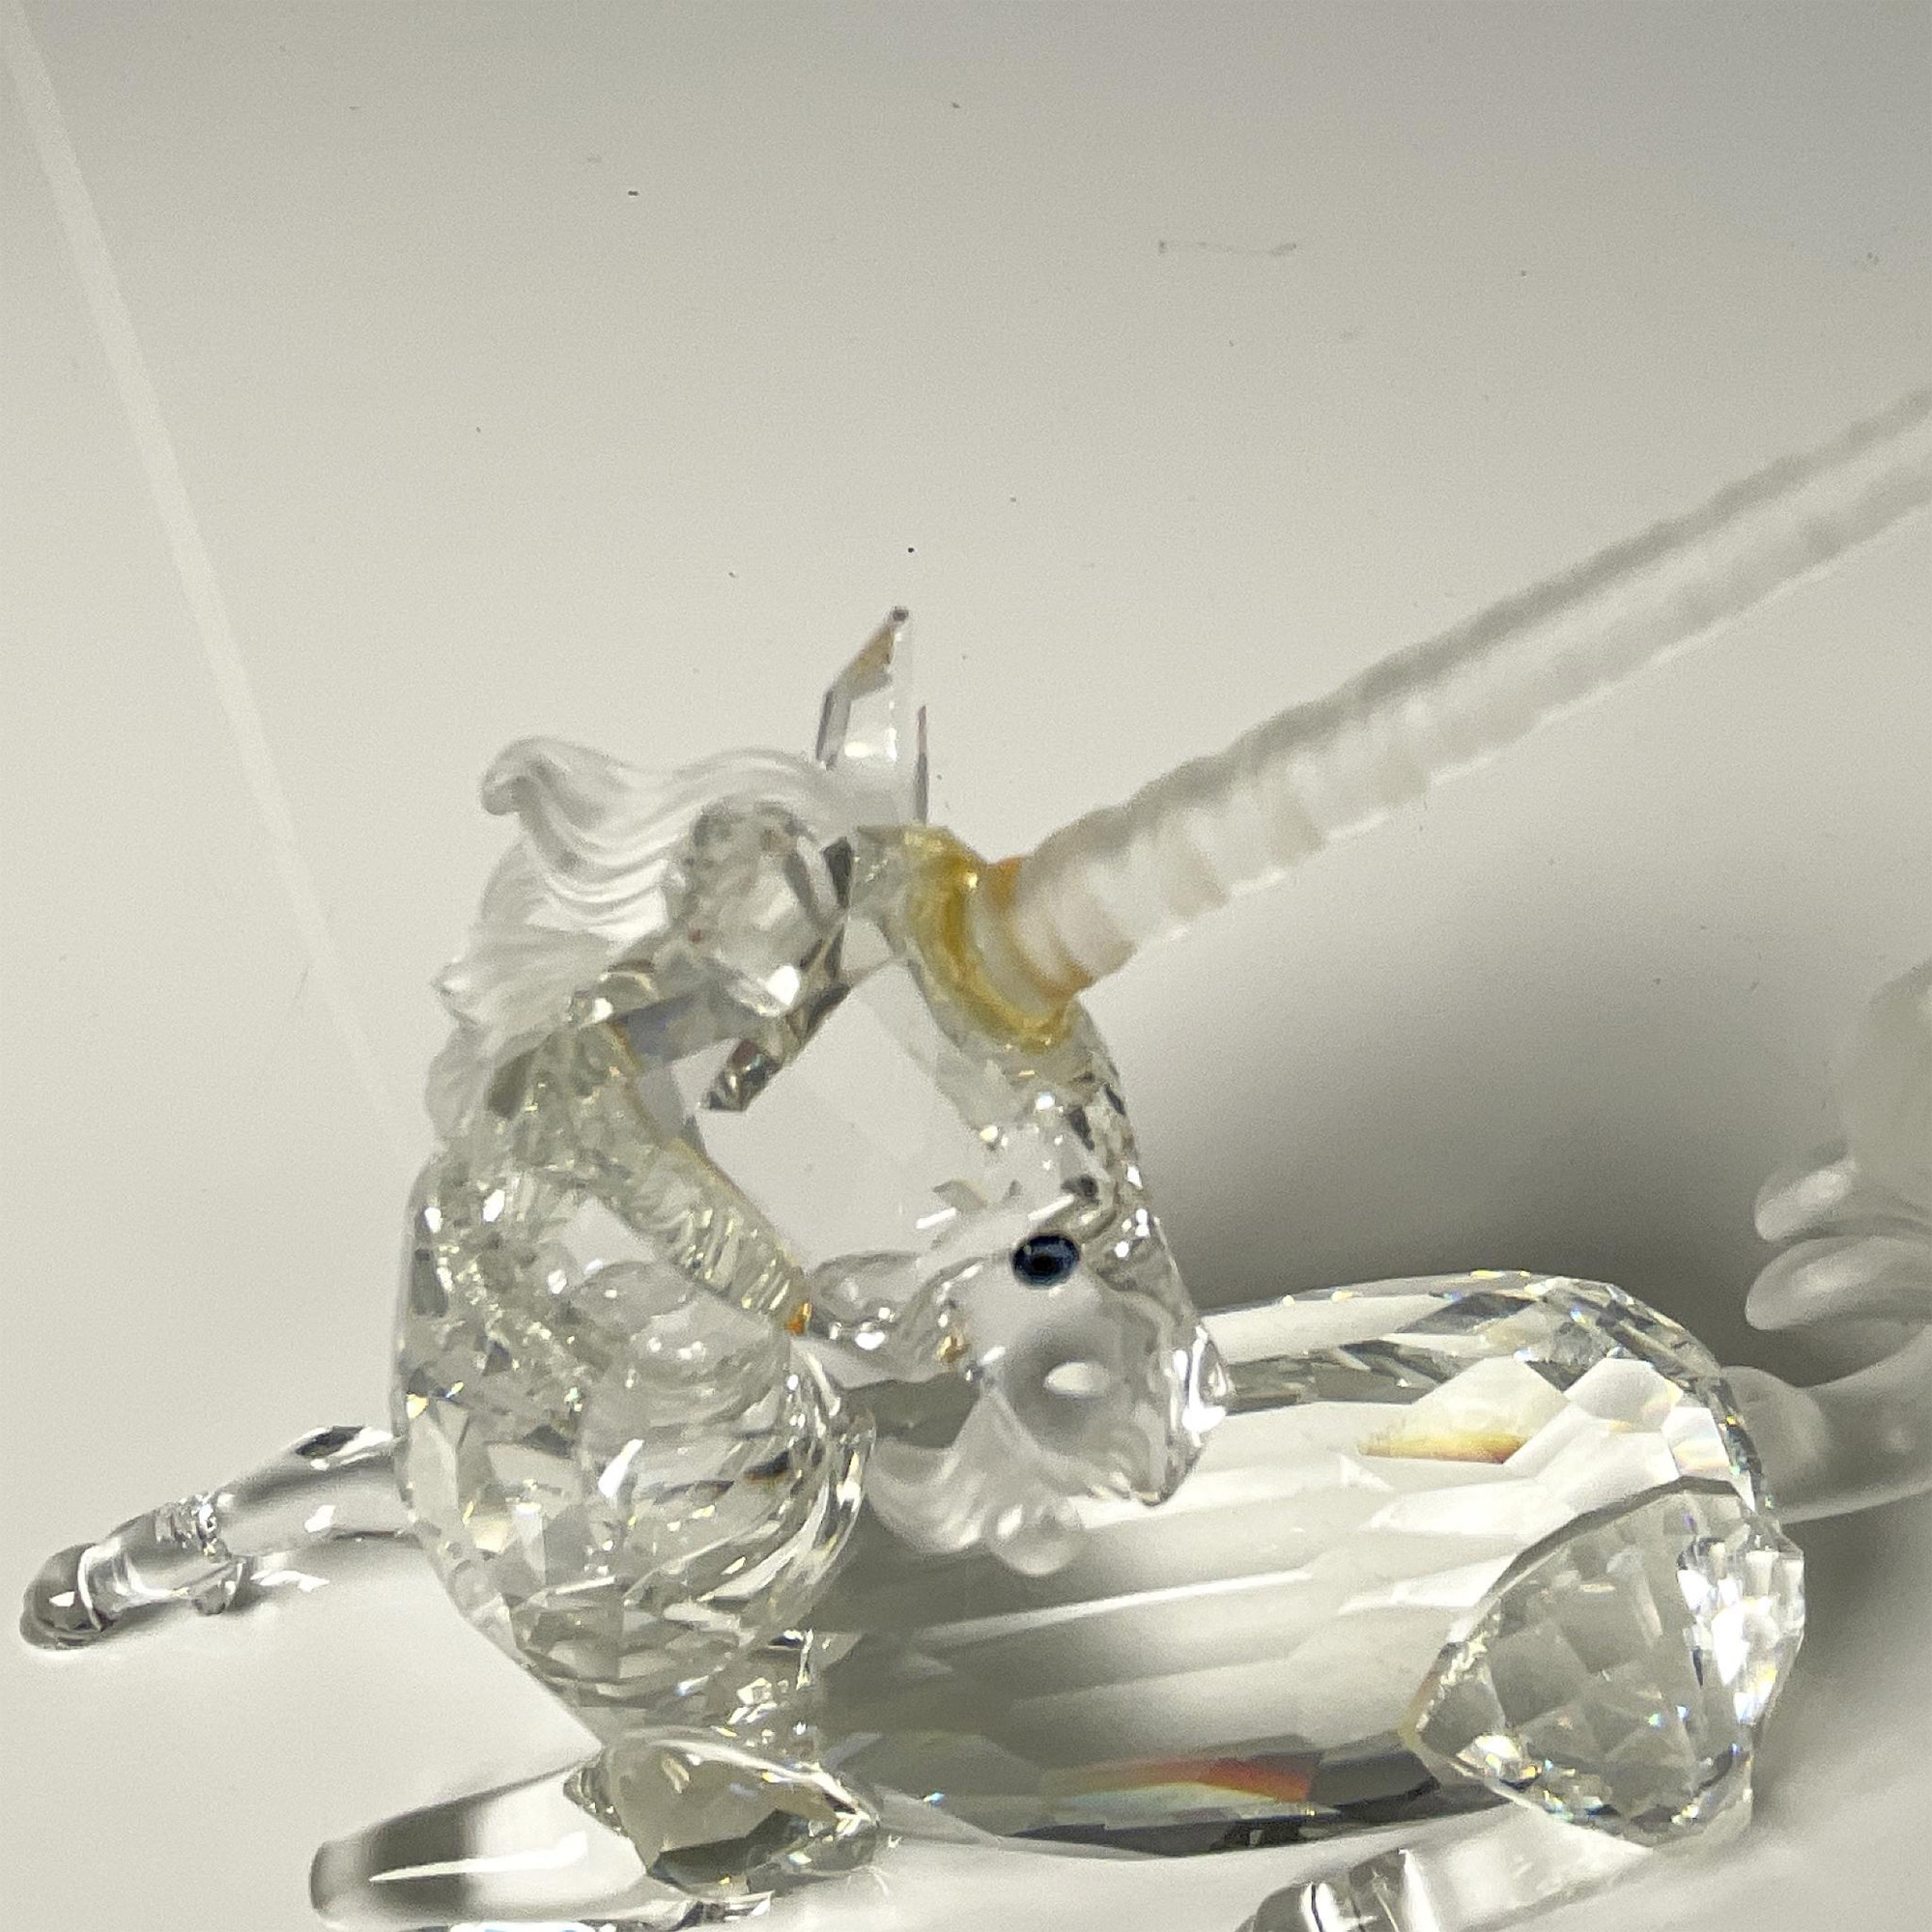 Swarovski Crystal Figurine, The Unicorn - Image 5 of 5